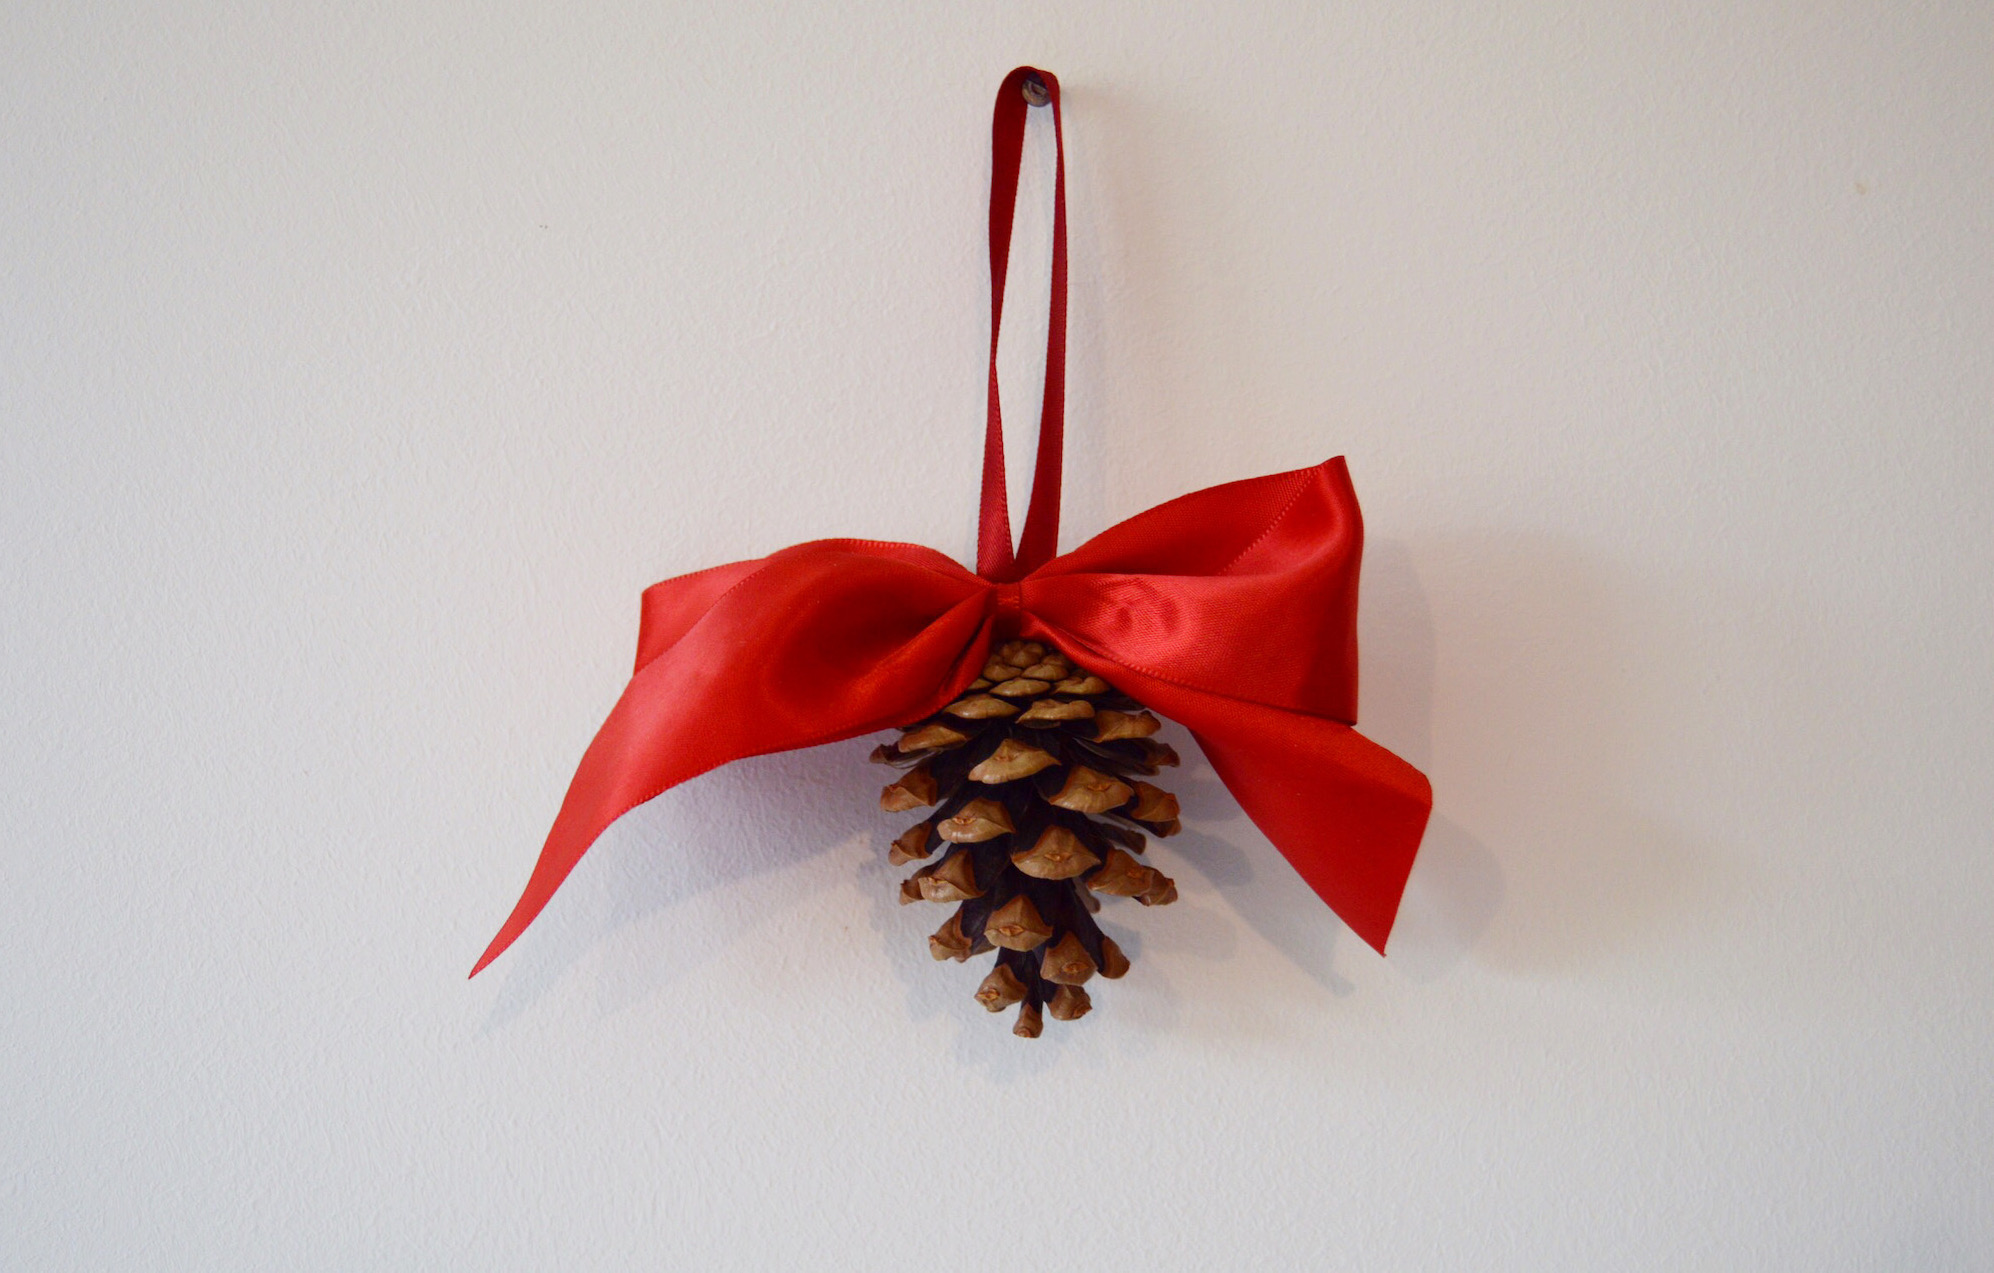 Tuto : Réaliser une décoration de Noël avec une pomme de pain